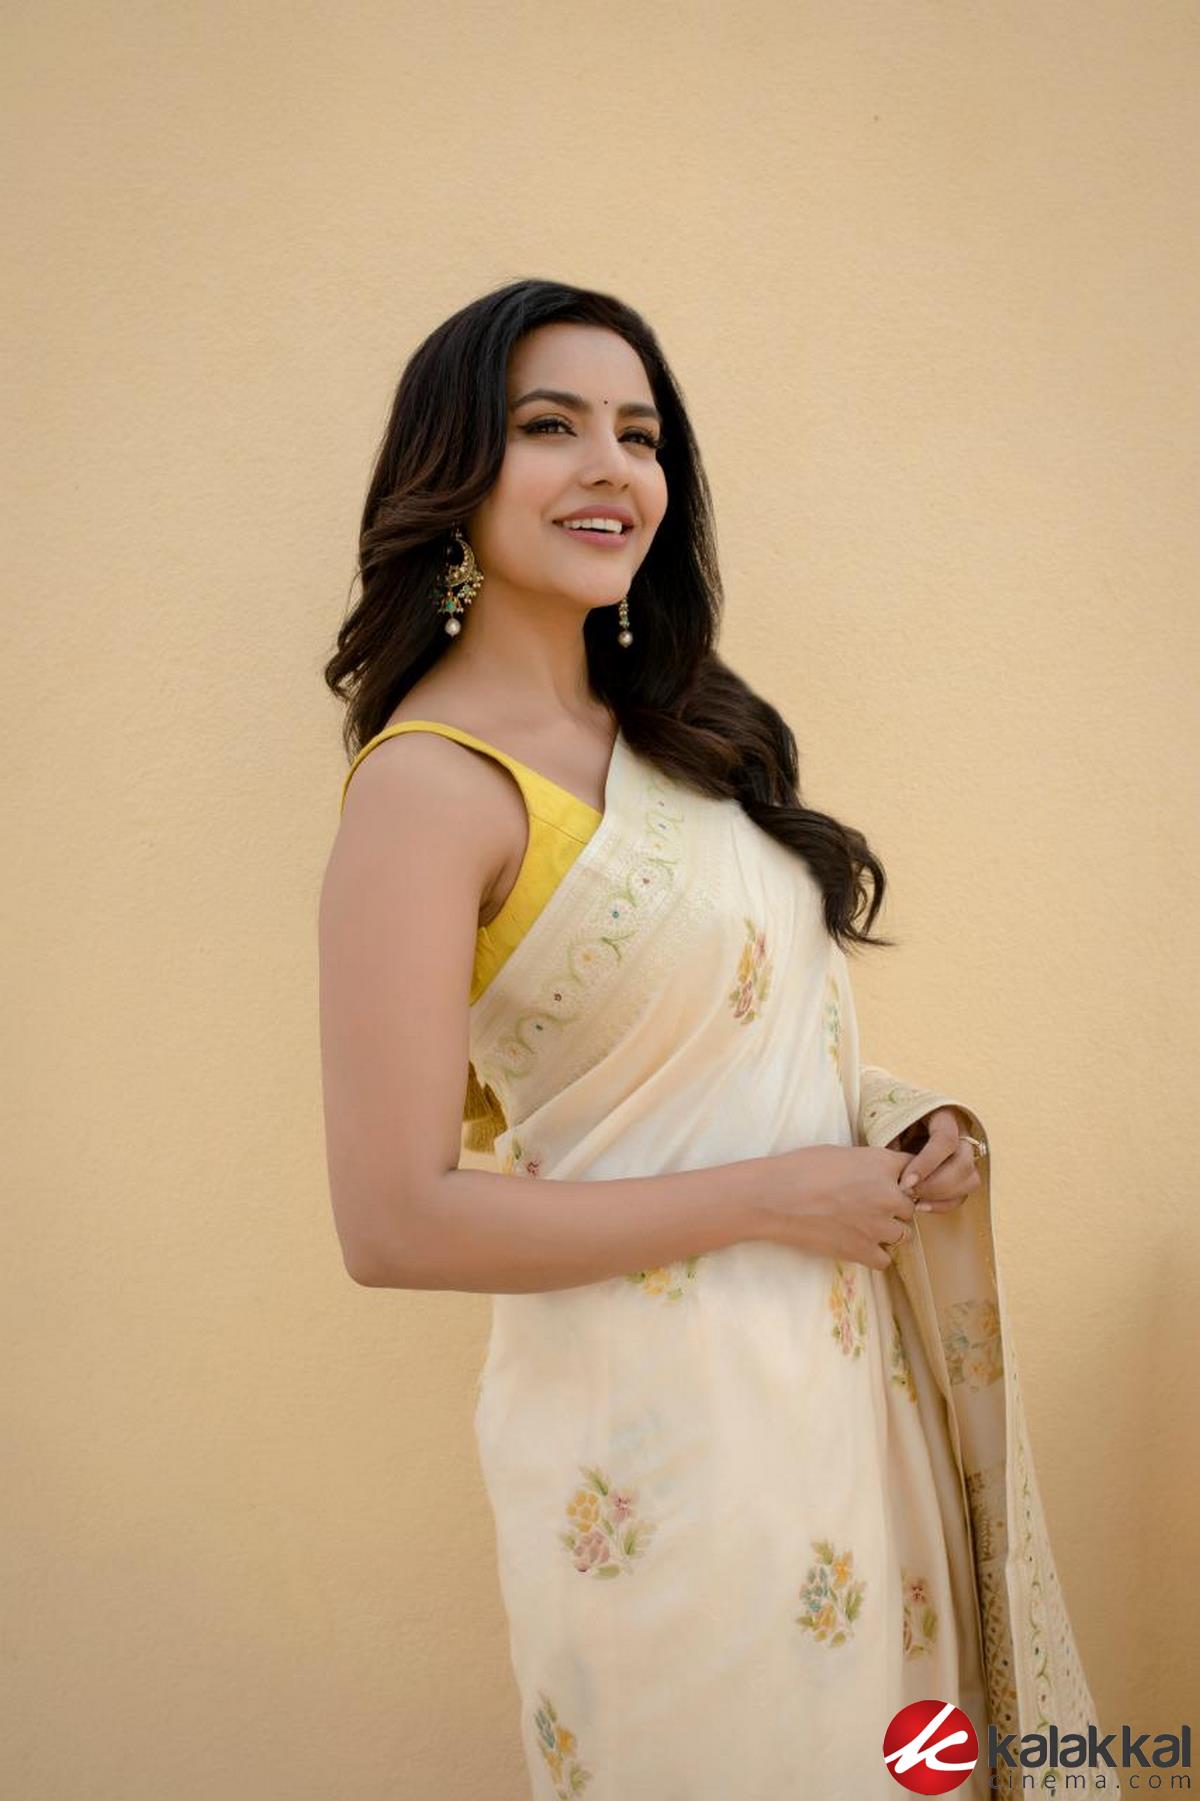 Actress Priya Anand Latest Photos 